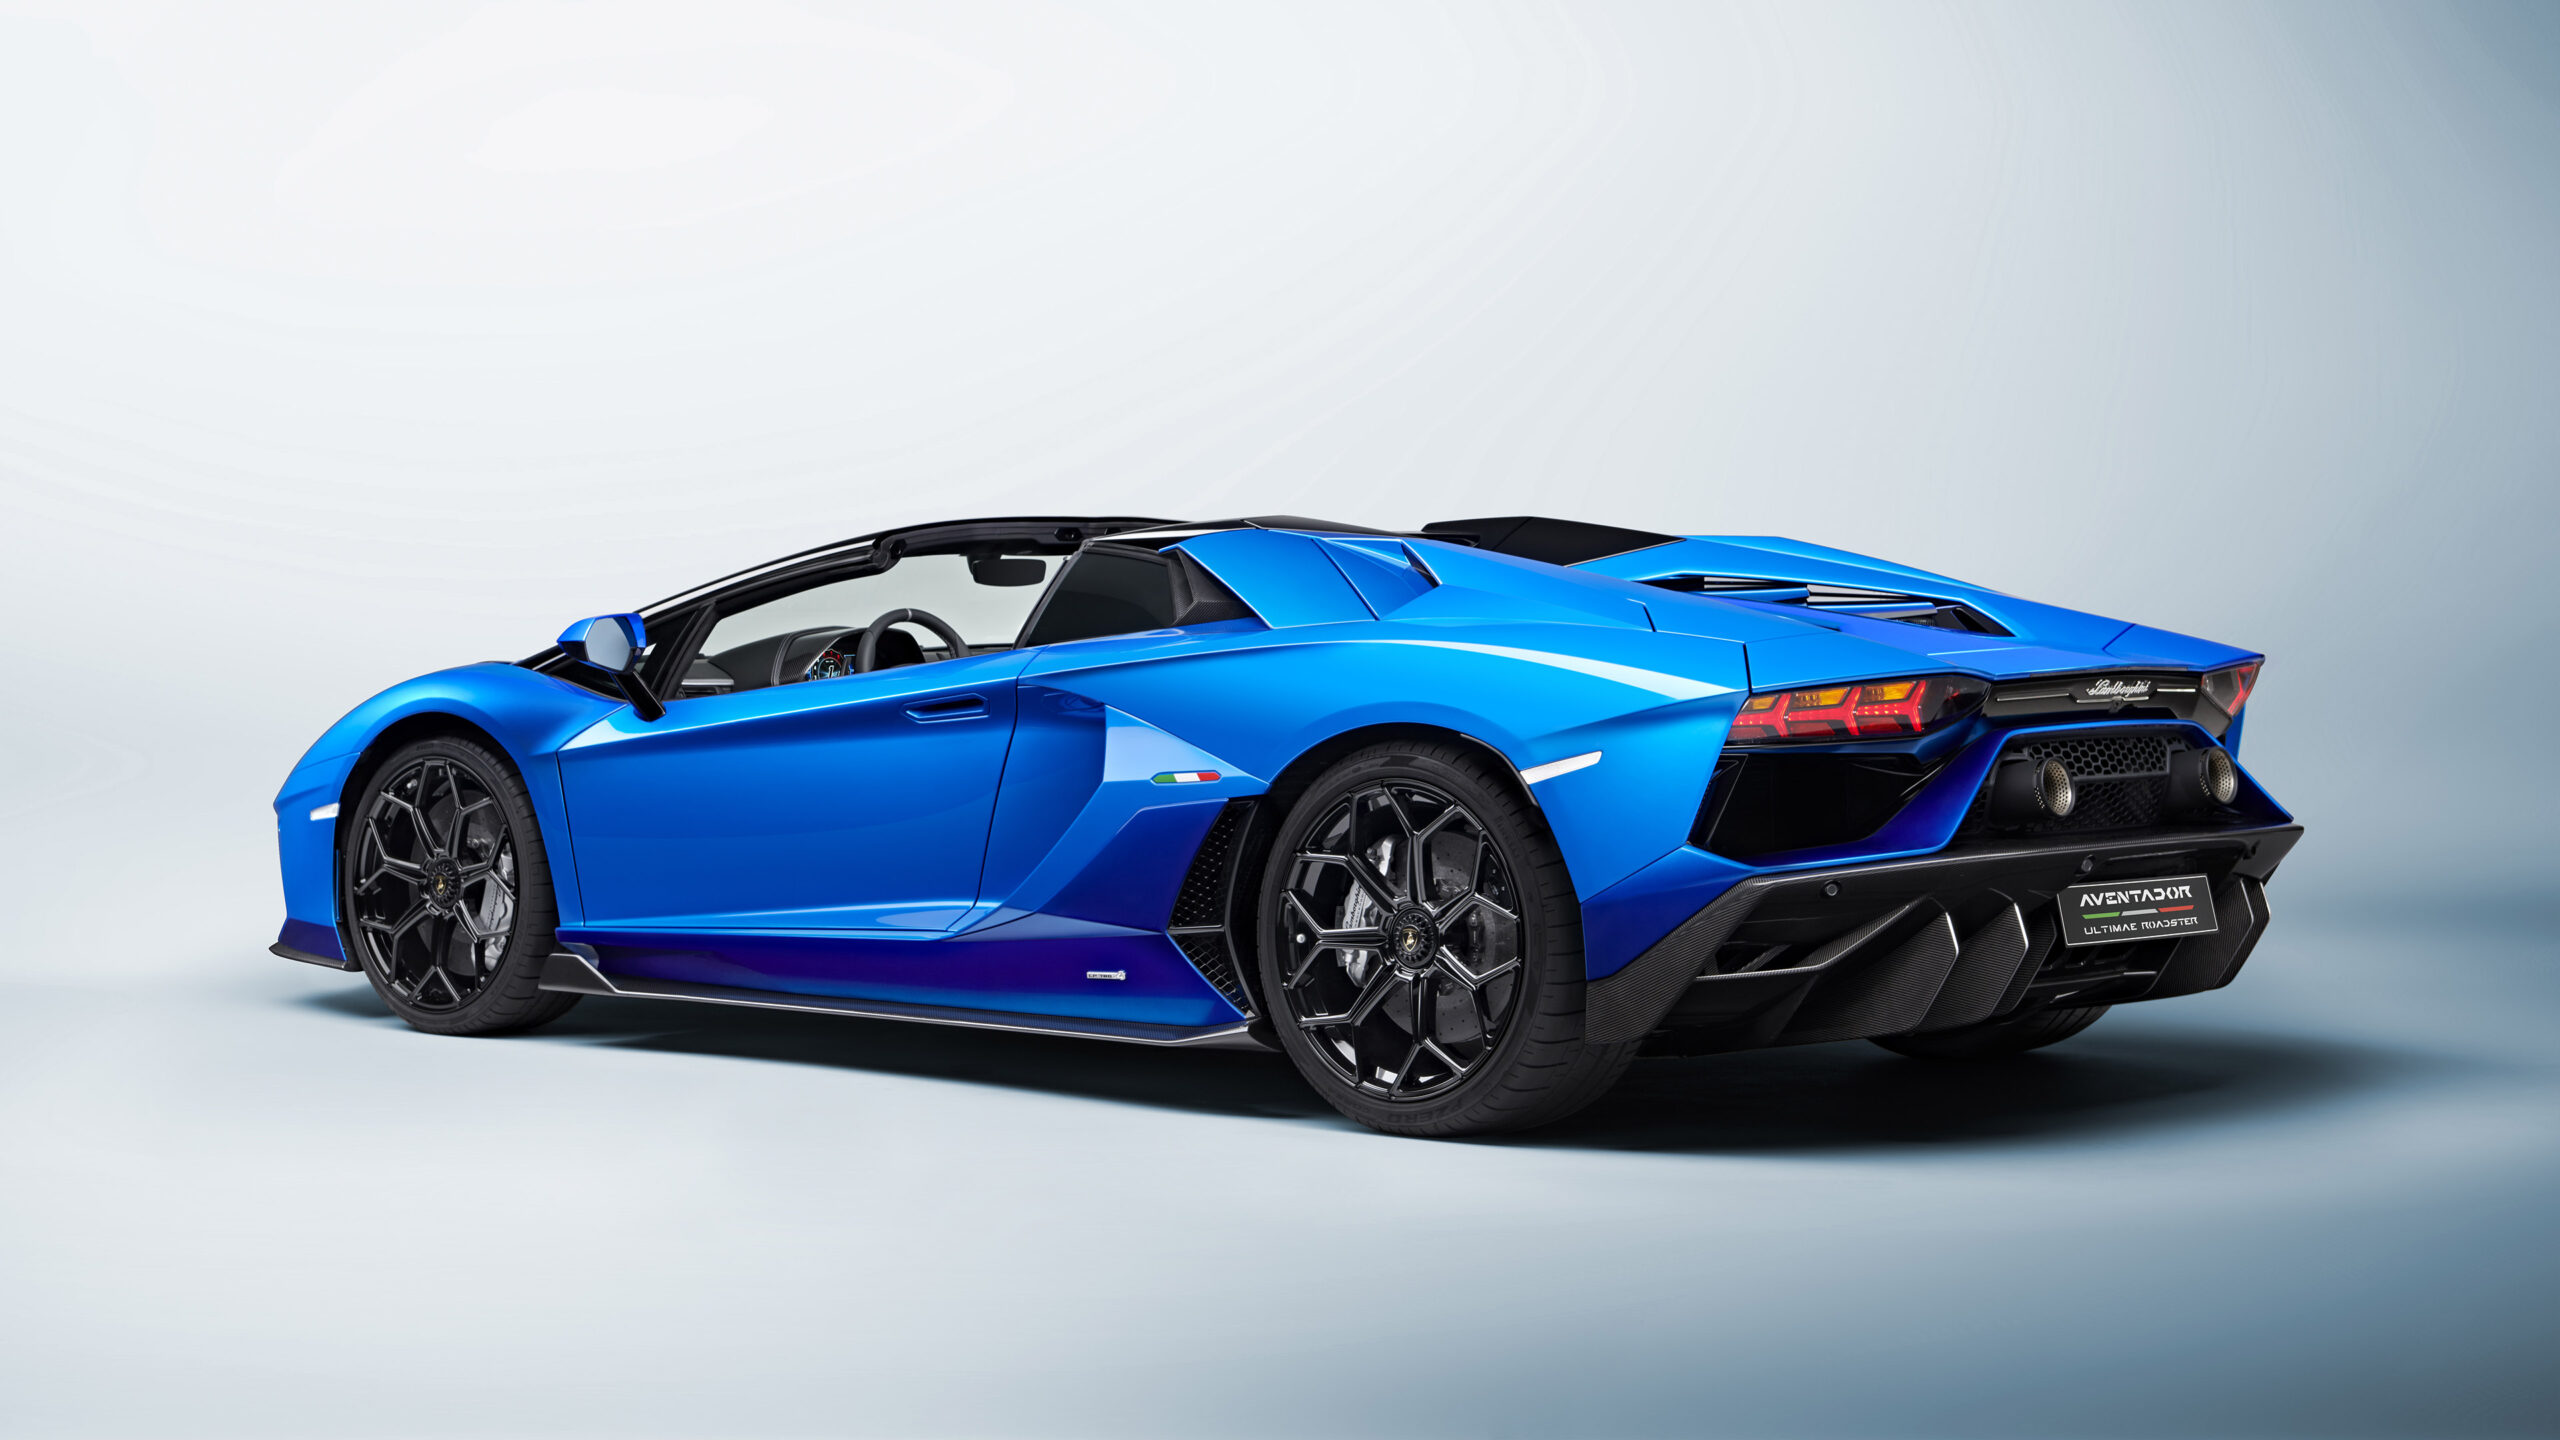 Download-2022-Lamborghini-Aventador-LP780-4-Ultimae-Roadster-Images